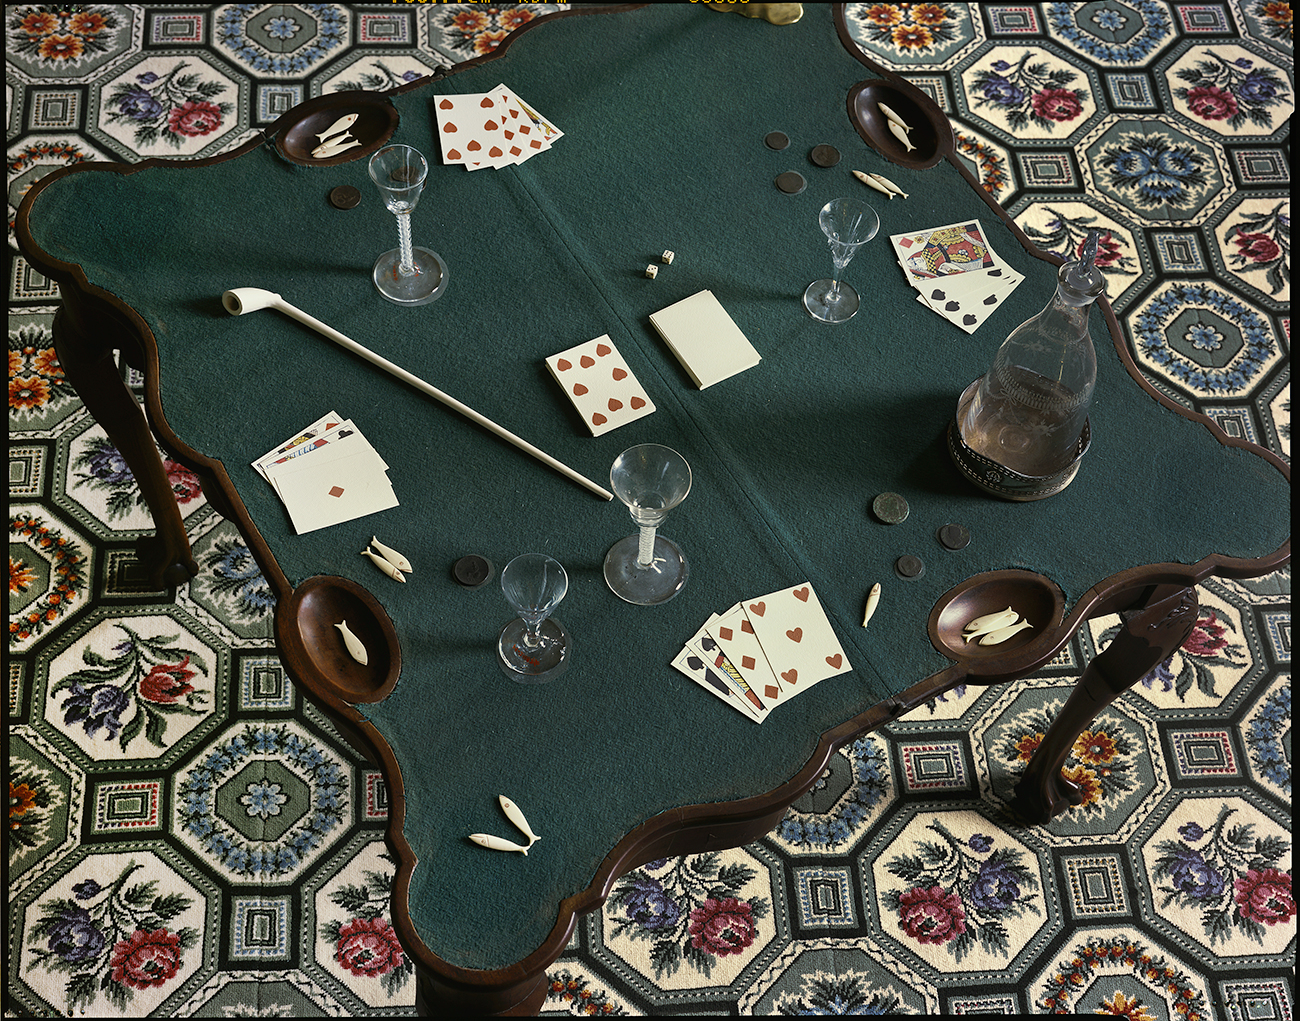 Gaming table, Mount Vernon, Virginia, 2016